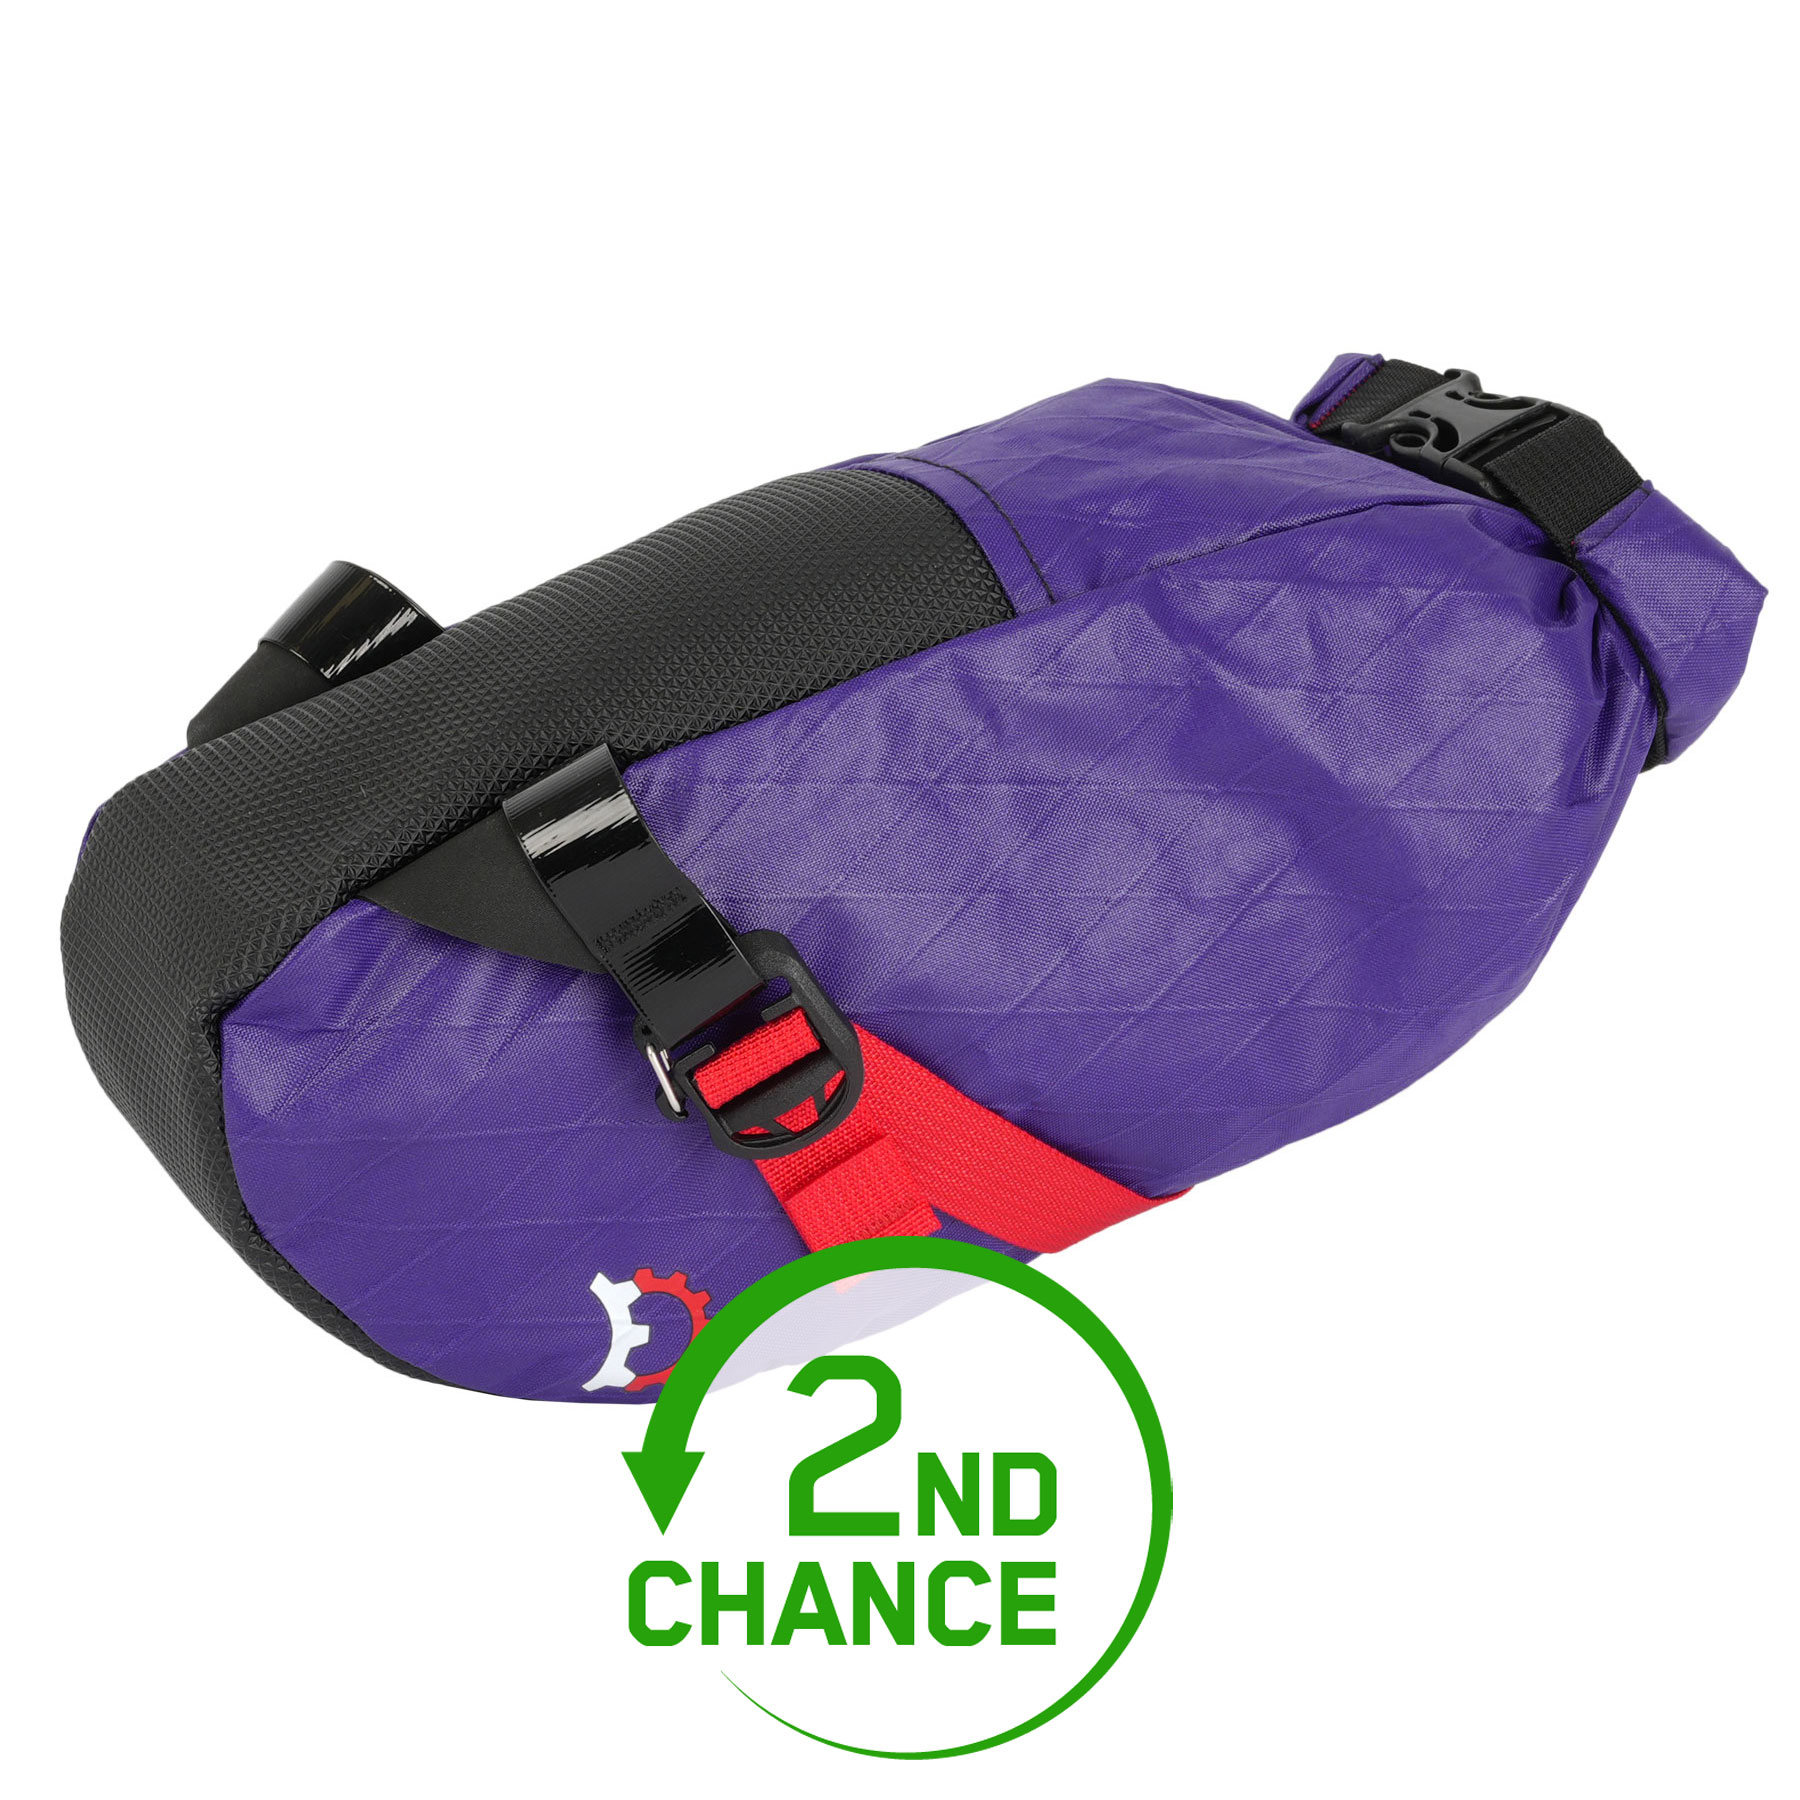 Produktbild von Revelate Designs Shrew 2.25L Satteltasche - purple crush - ohne Zusatz-Gurt - B-Ware